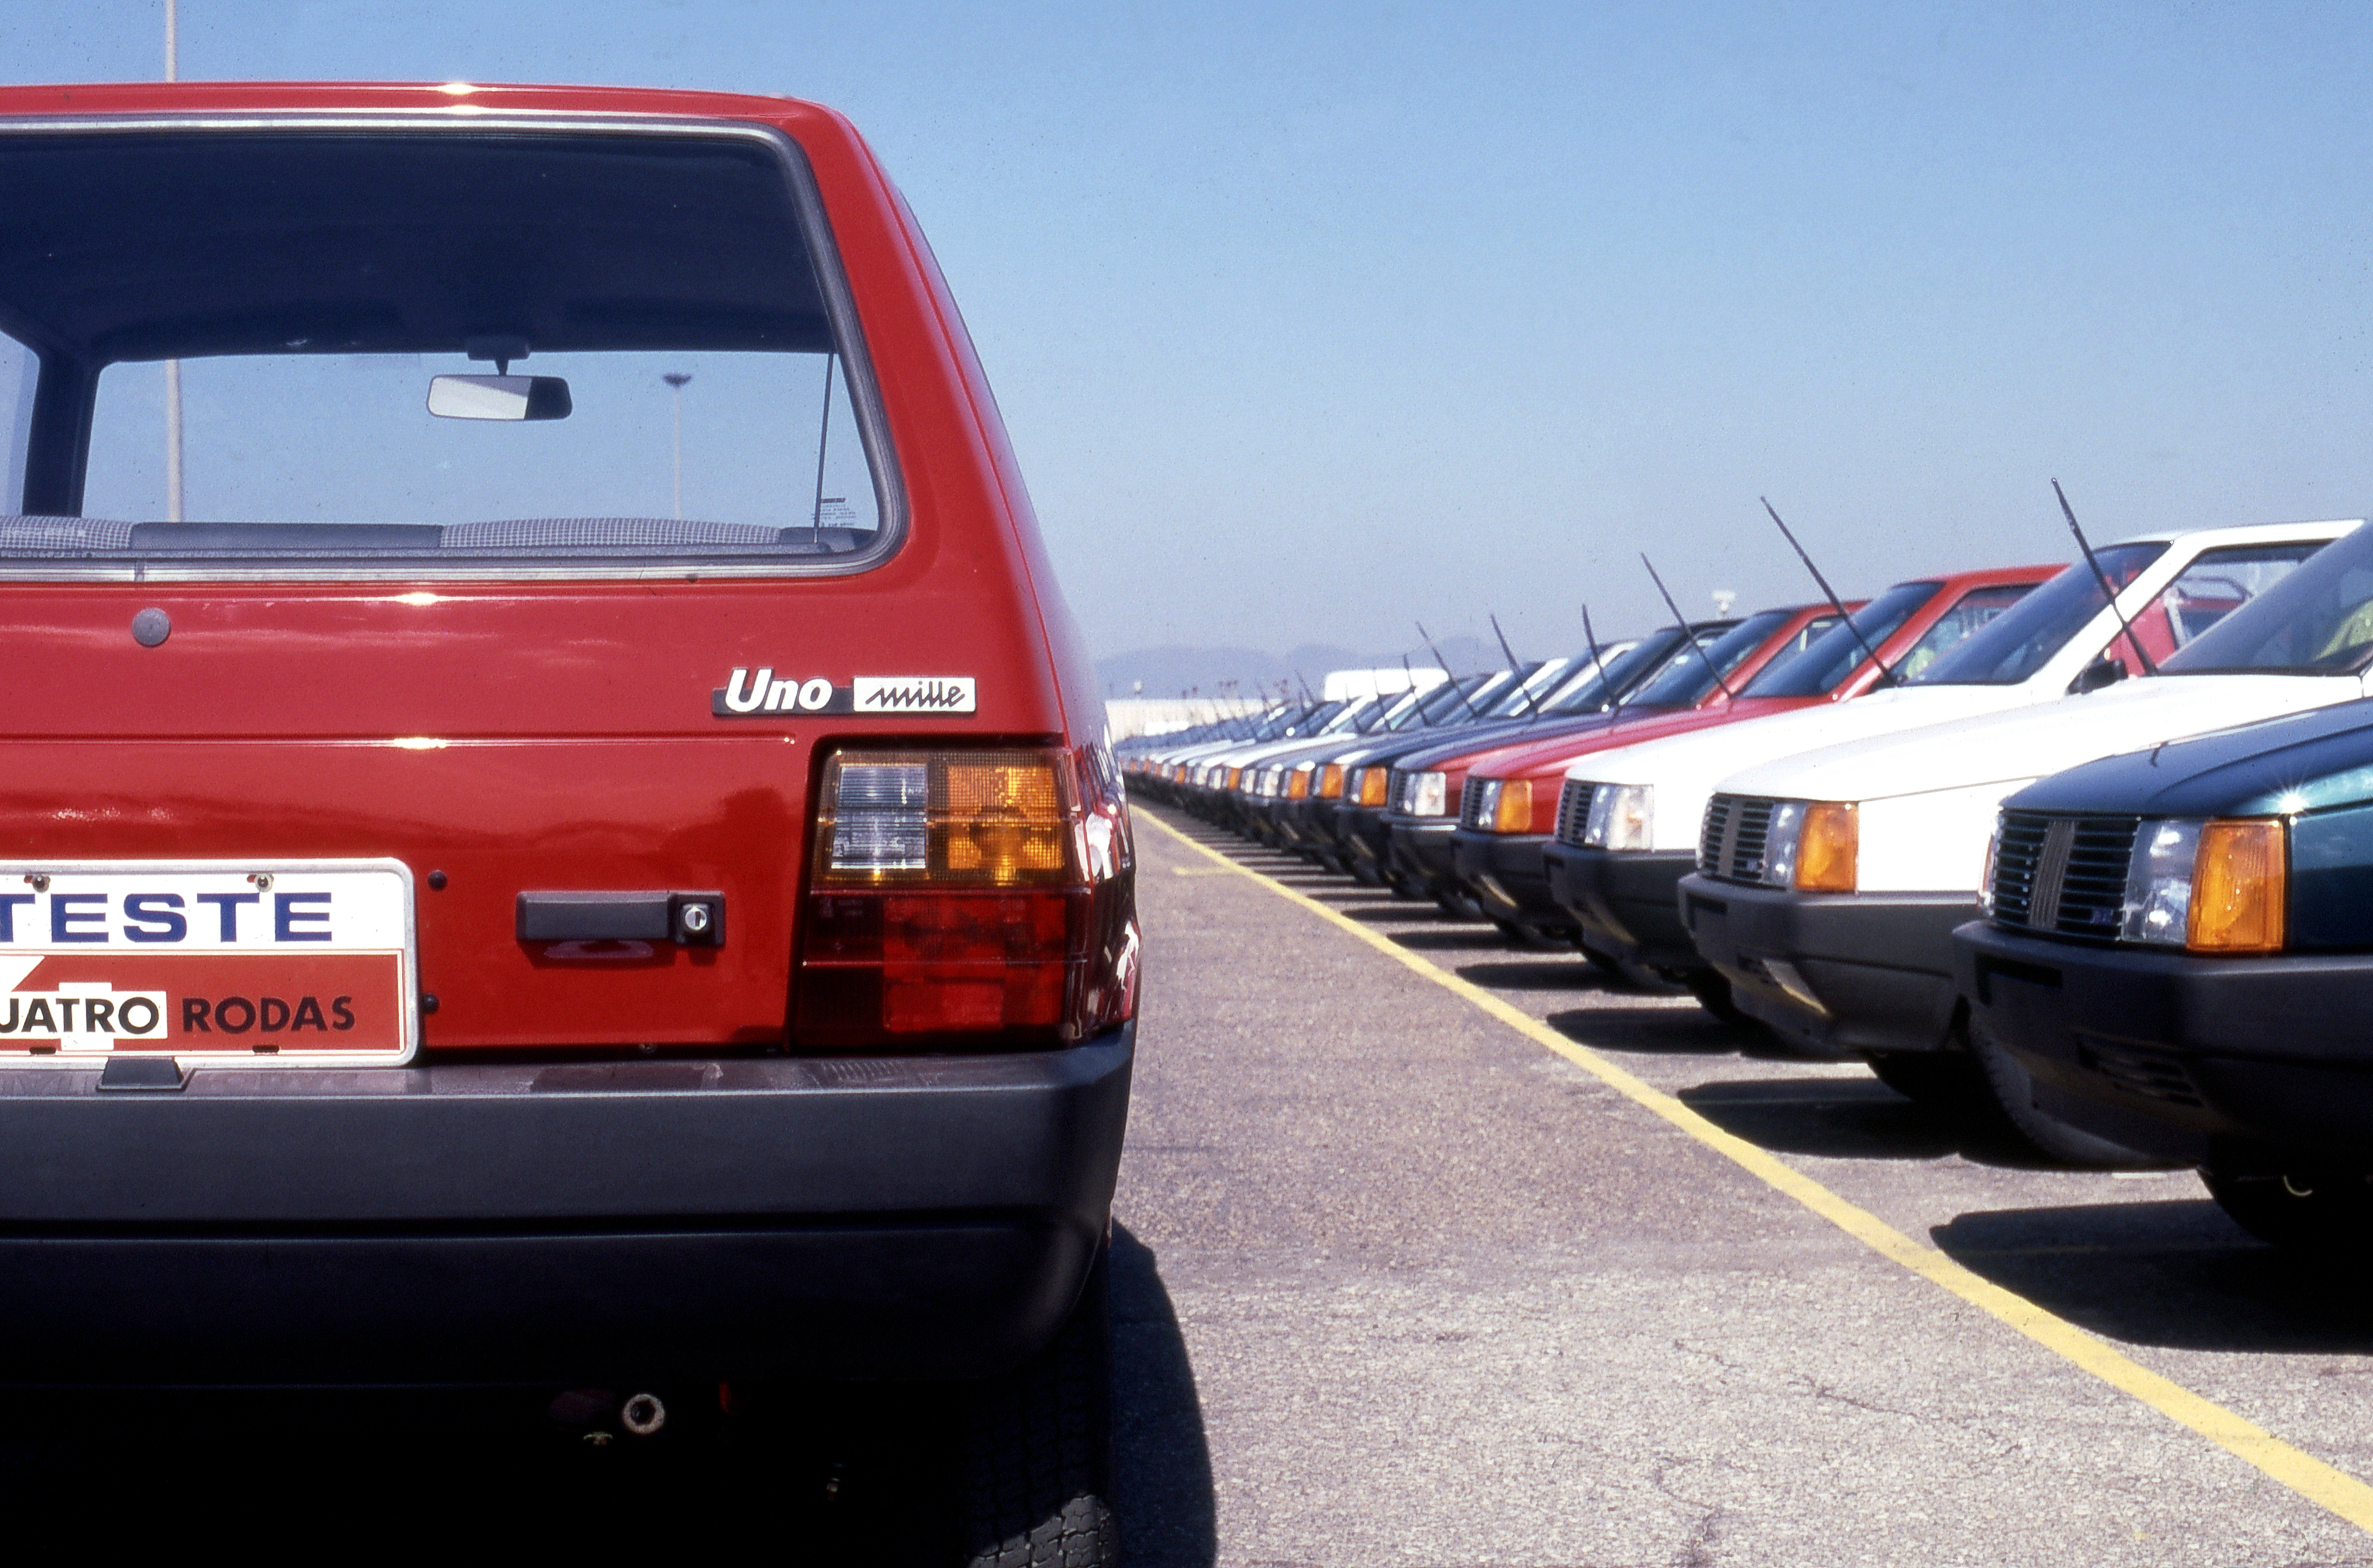 Fiat Uno, 35 anos: inovações e polêmicas do Fiat mais duradouro do